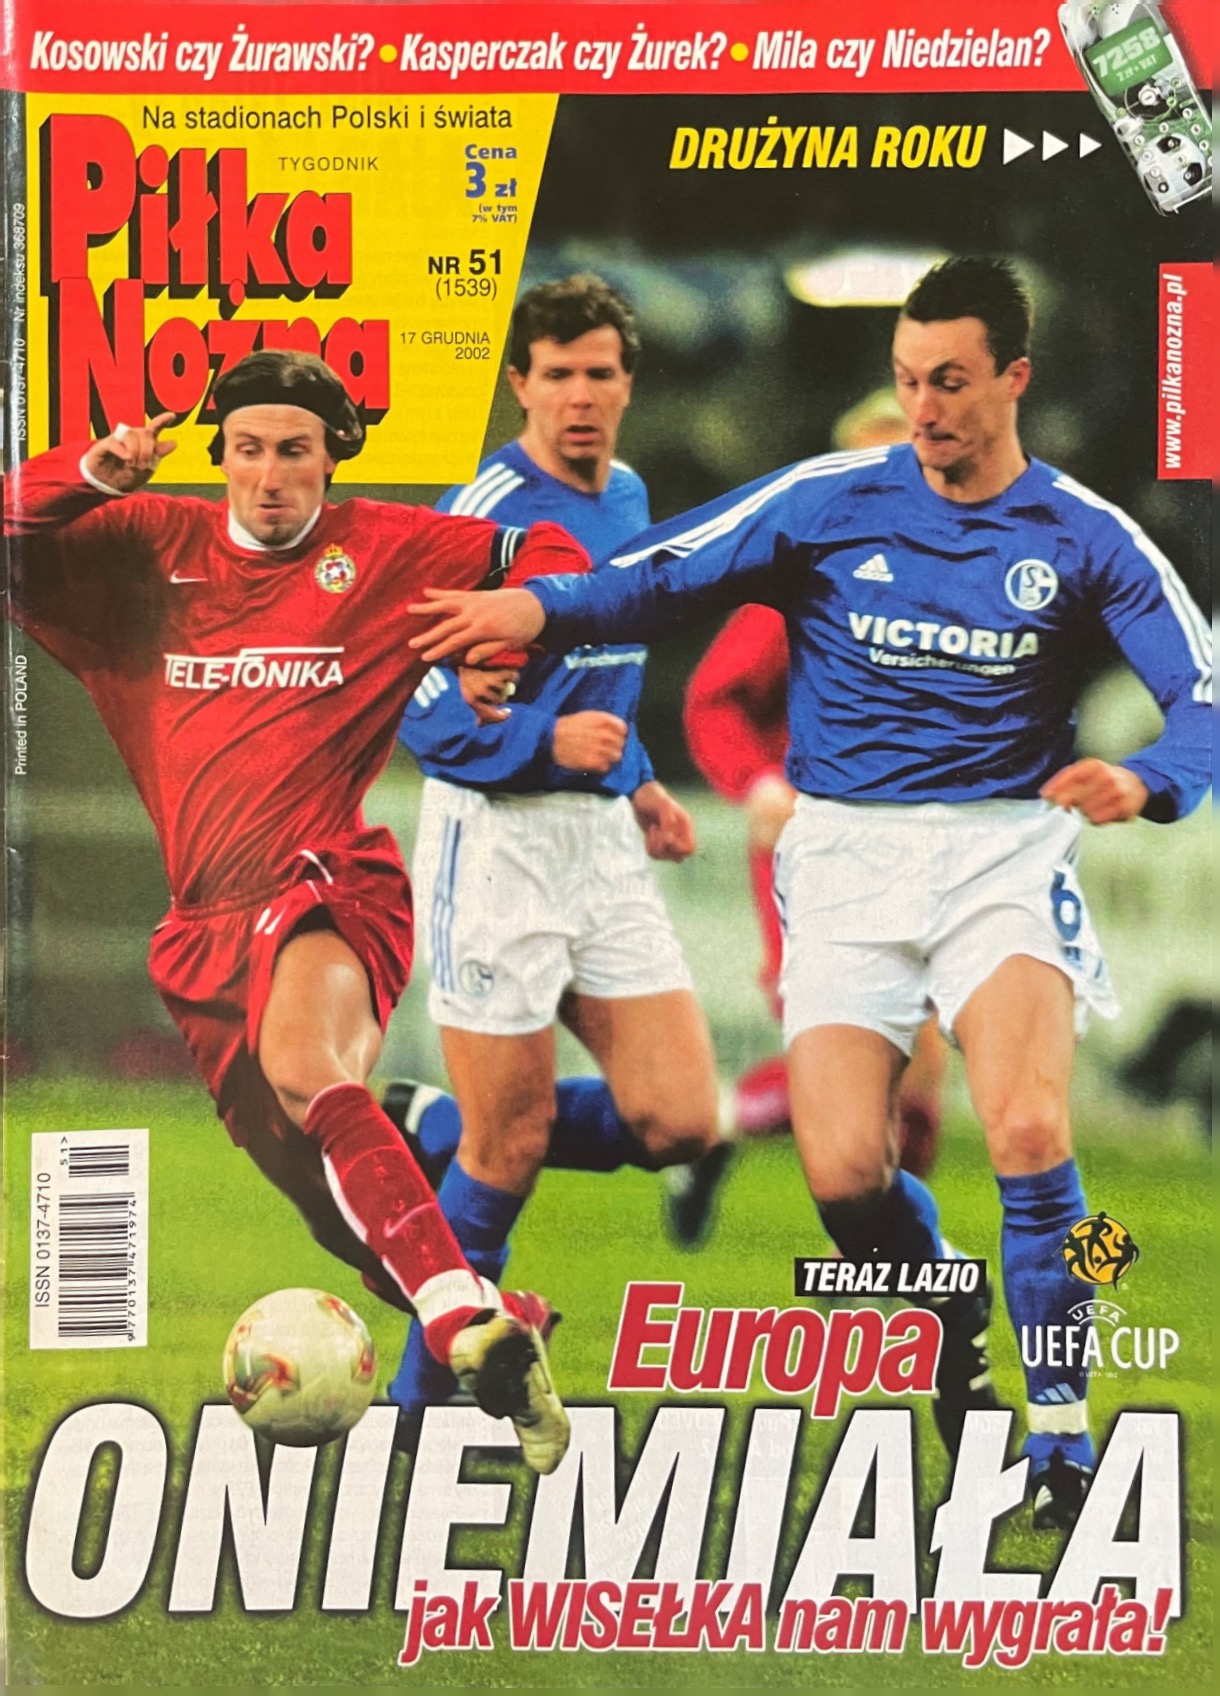 Piłka Nożna po meczu Schalke 04 Gelsenkirchen - Wisła Kraków 1:4 (10.12.2002)